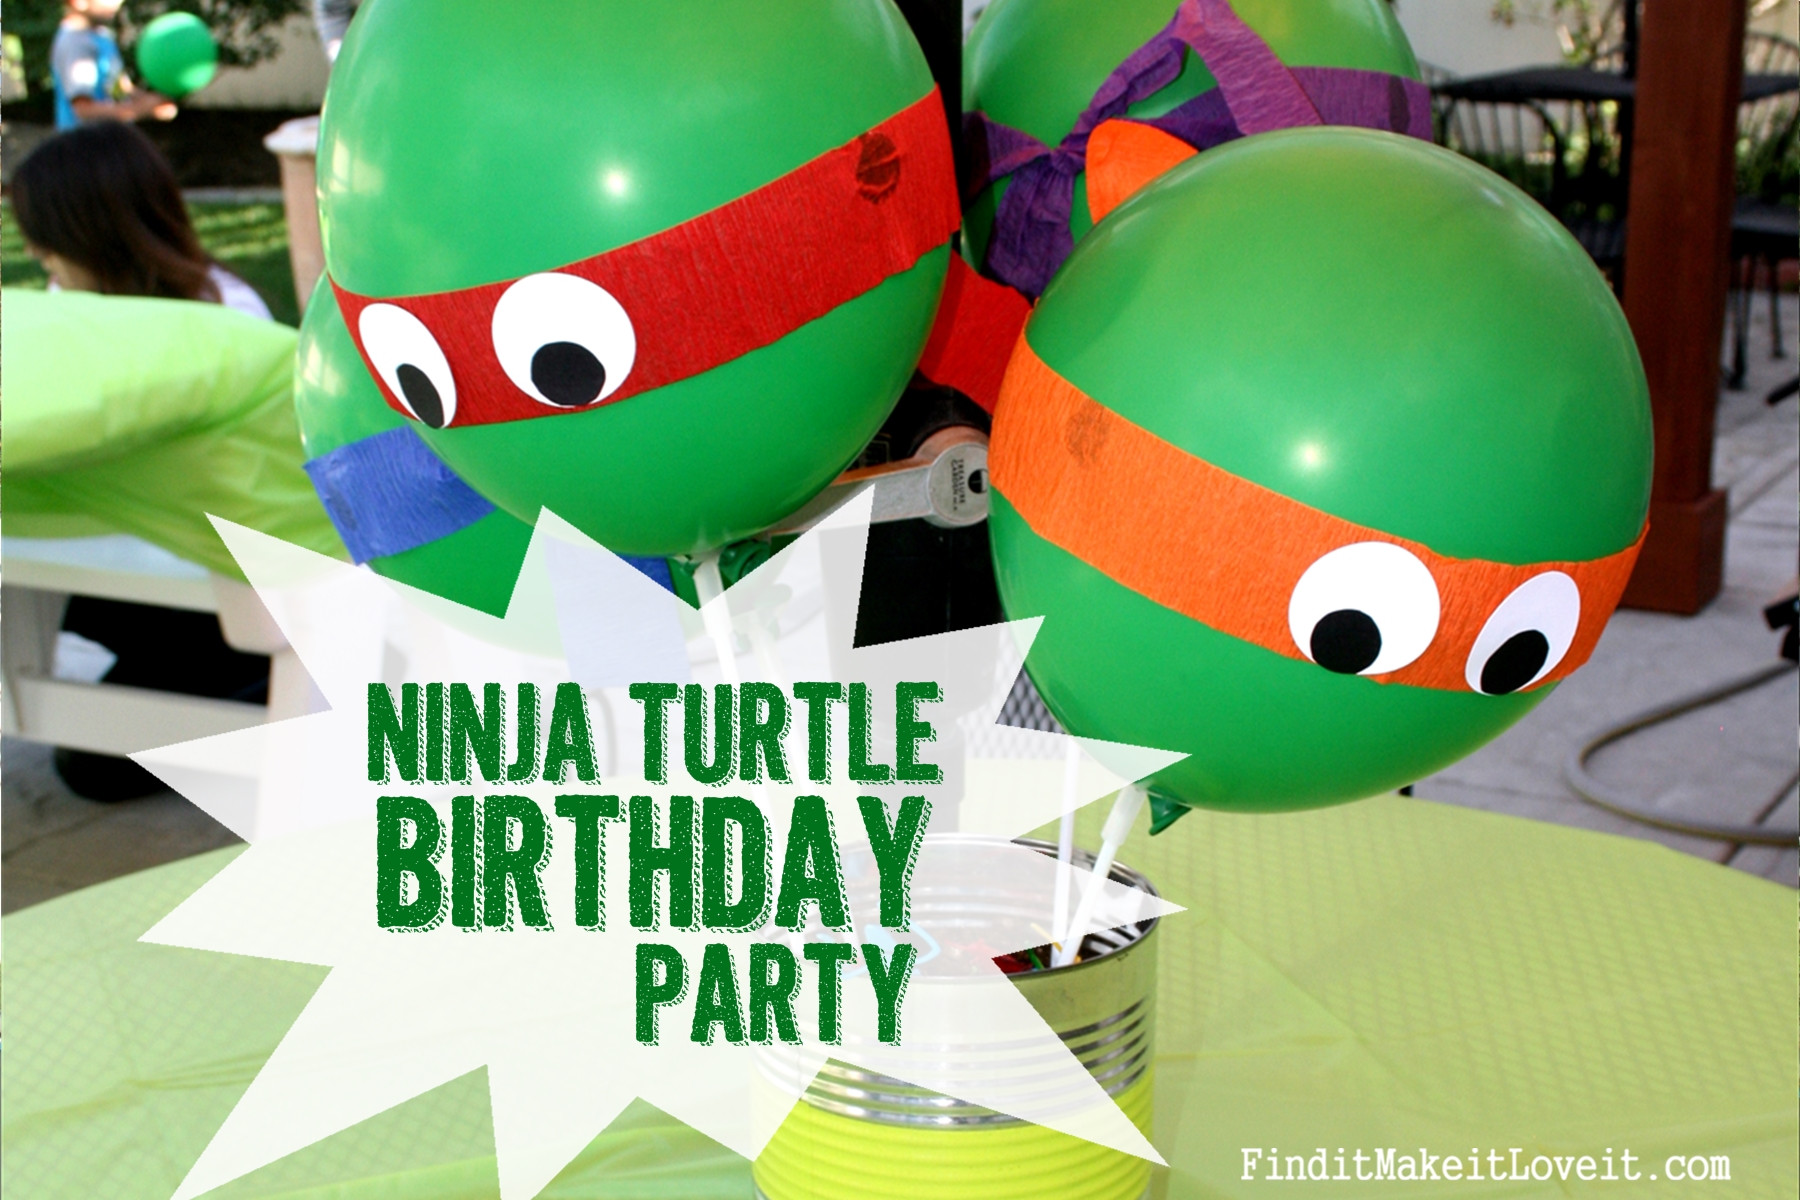 Best ideas about Teenage Mutant Ninja Turtle Birthday Party
. Save or Pin Teenage Mutant Ninja Turtle Birthday Party Now.